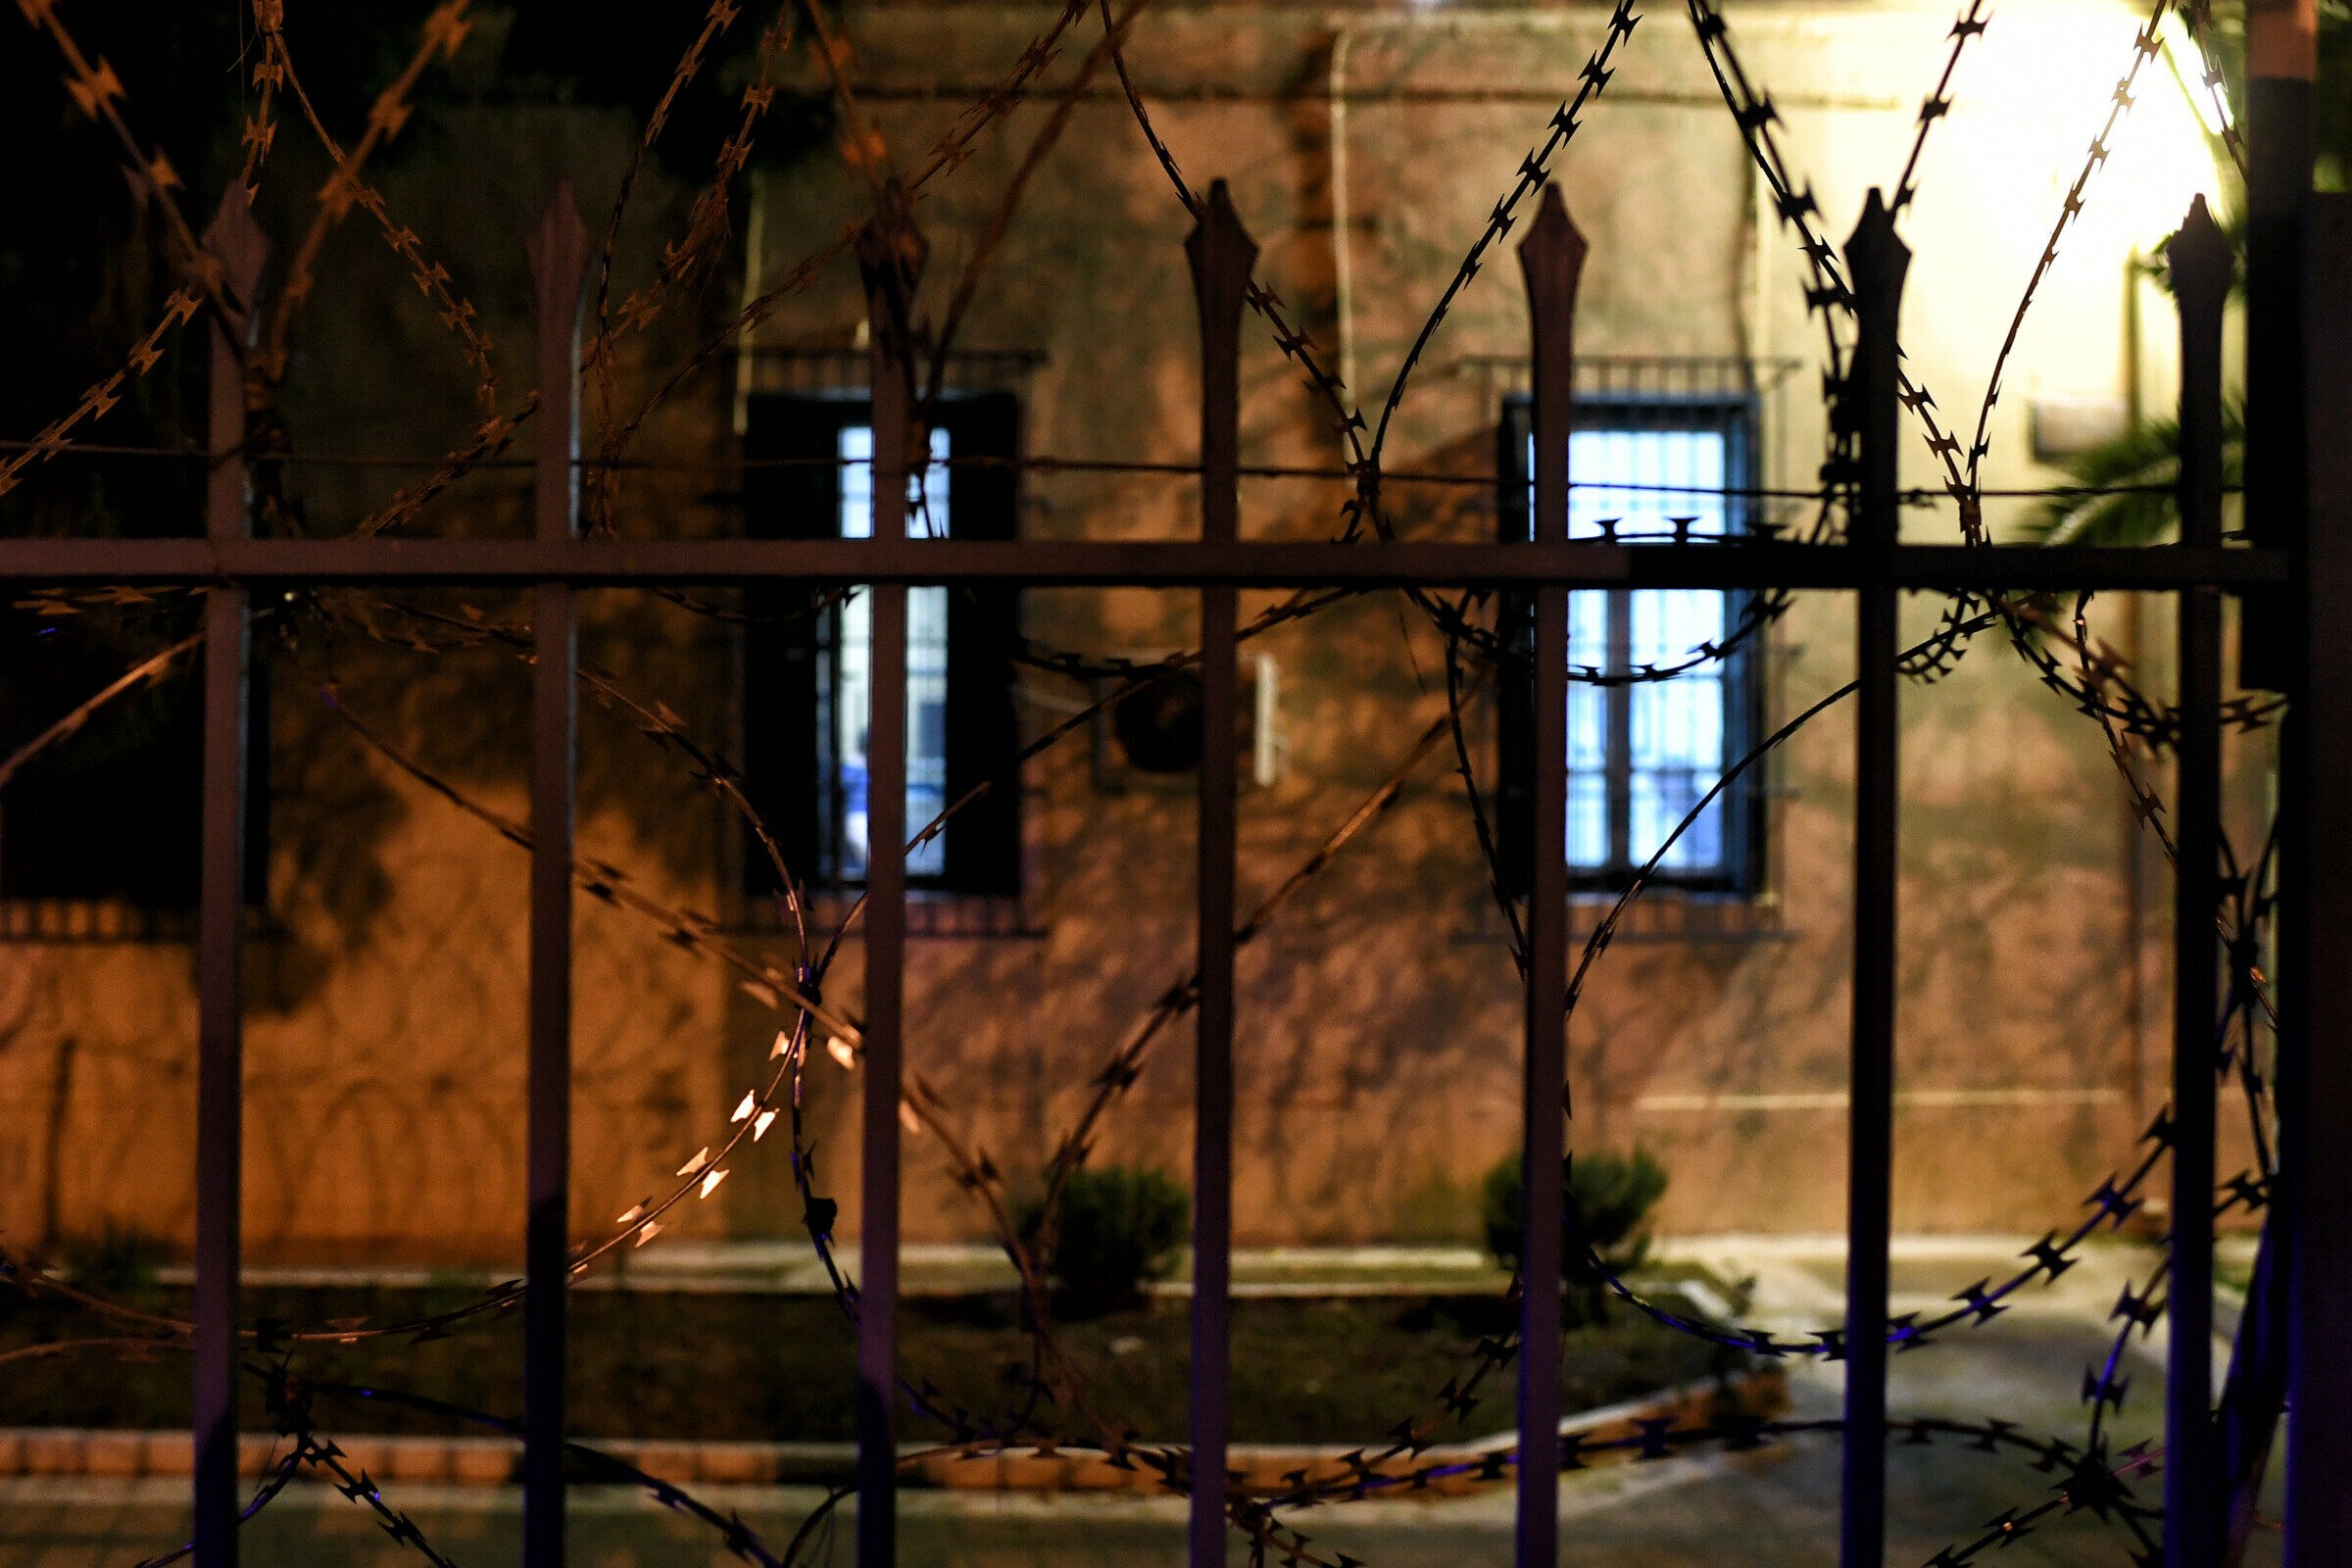 Φωτογραφία που εικονίζει εξωτερικό χώρο από το Κατάστημα Κράτησης Κορίνθου κατά τη διάρκεια έντασης που δημιουργήθηκε ανάμεσα σε ομάδες ανήλικων κρατουμένων, Κόρινθος, Παρασκευή 5 Φεβρουαρίου 2021. Σάββατο 6 Φεβρουαρίου 2021. ΑΠΕ-ΜΠΕ/ΑΠΕ-ΜΠΕ/ΒΑΣΙΛΗΣ ΨΩΜΑΣ